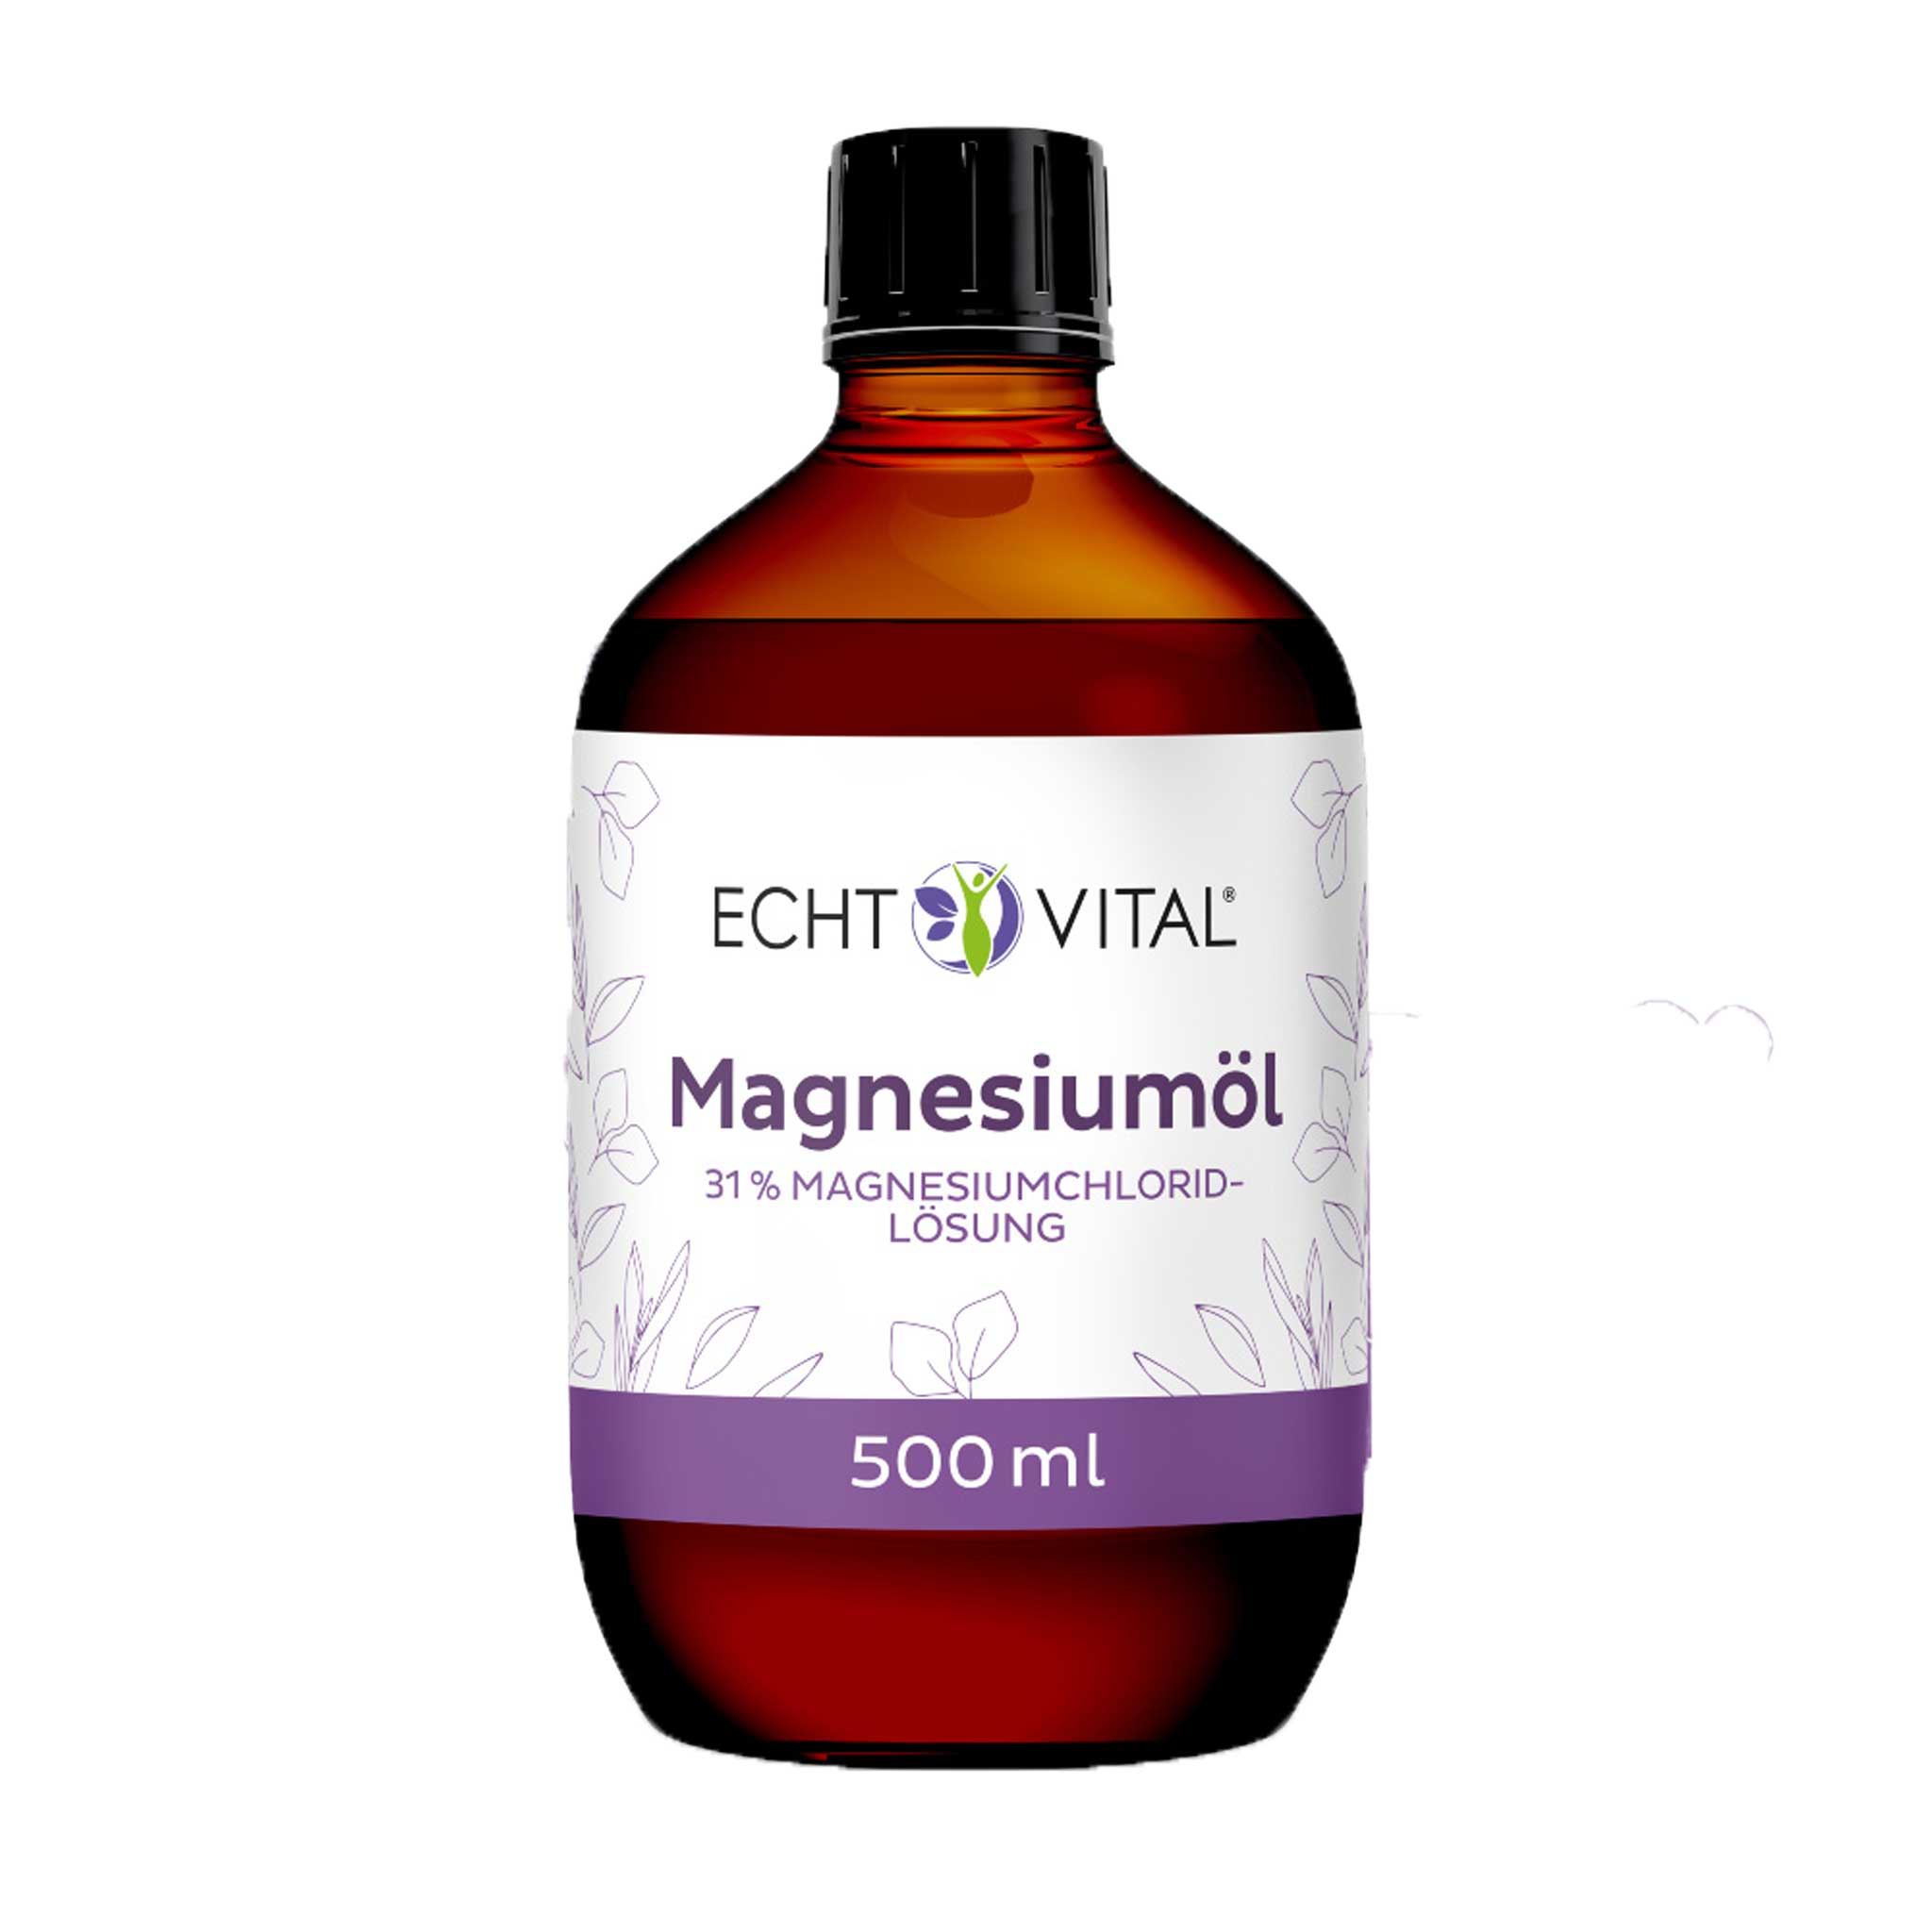 Magnesiumöl von Echt Vital in 500 Milliliter Flasche